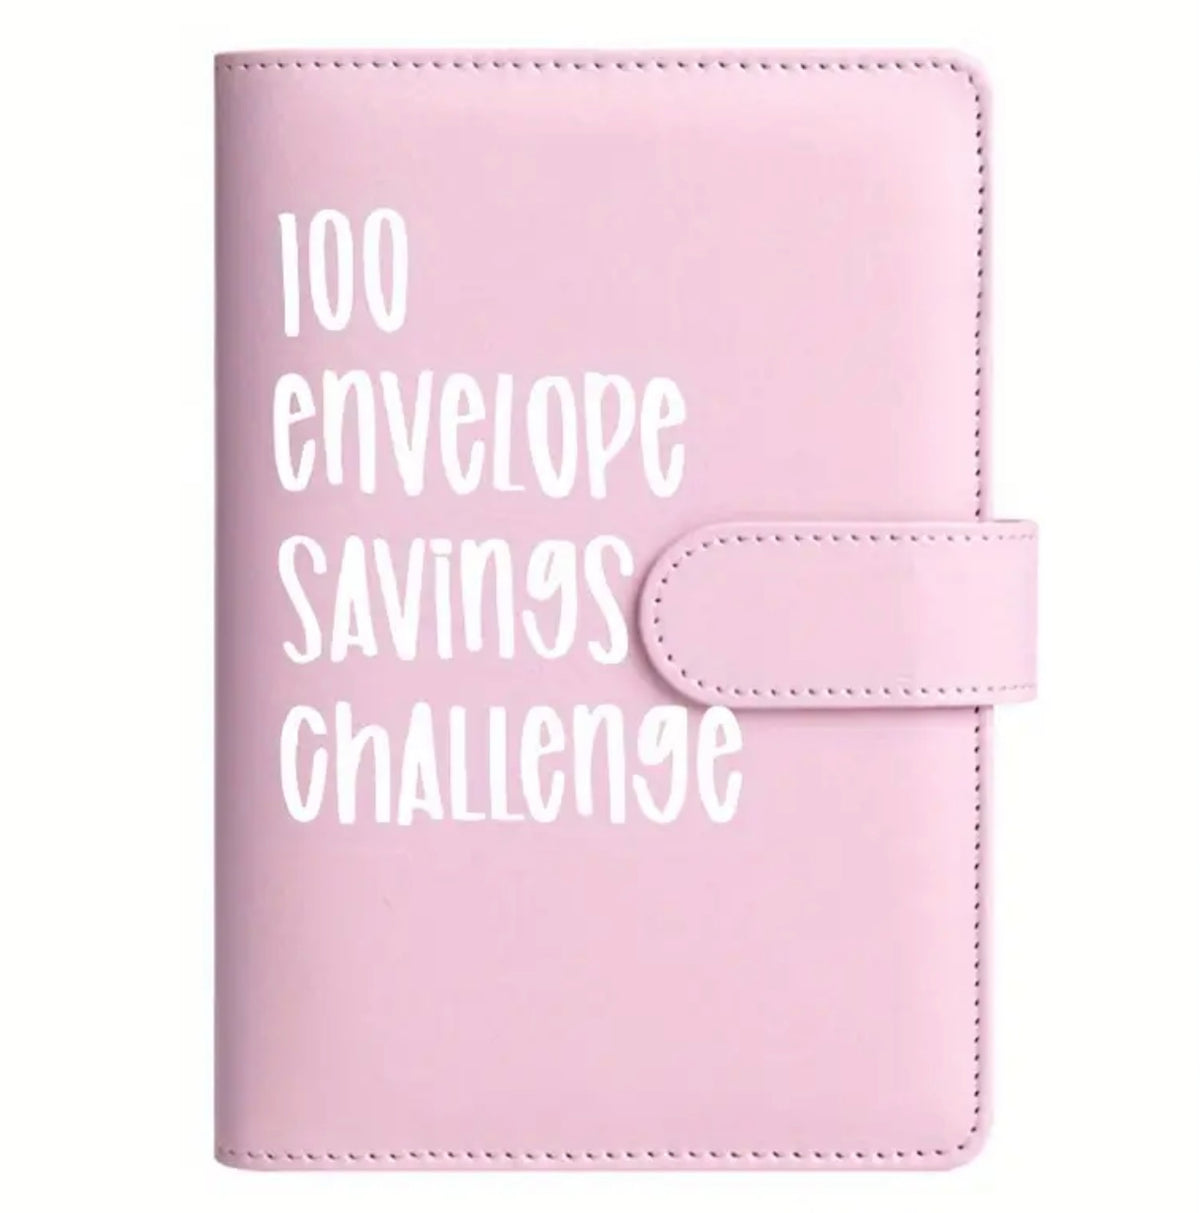 100 Envelope Savings Challenge (Pink)